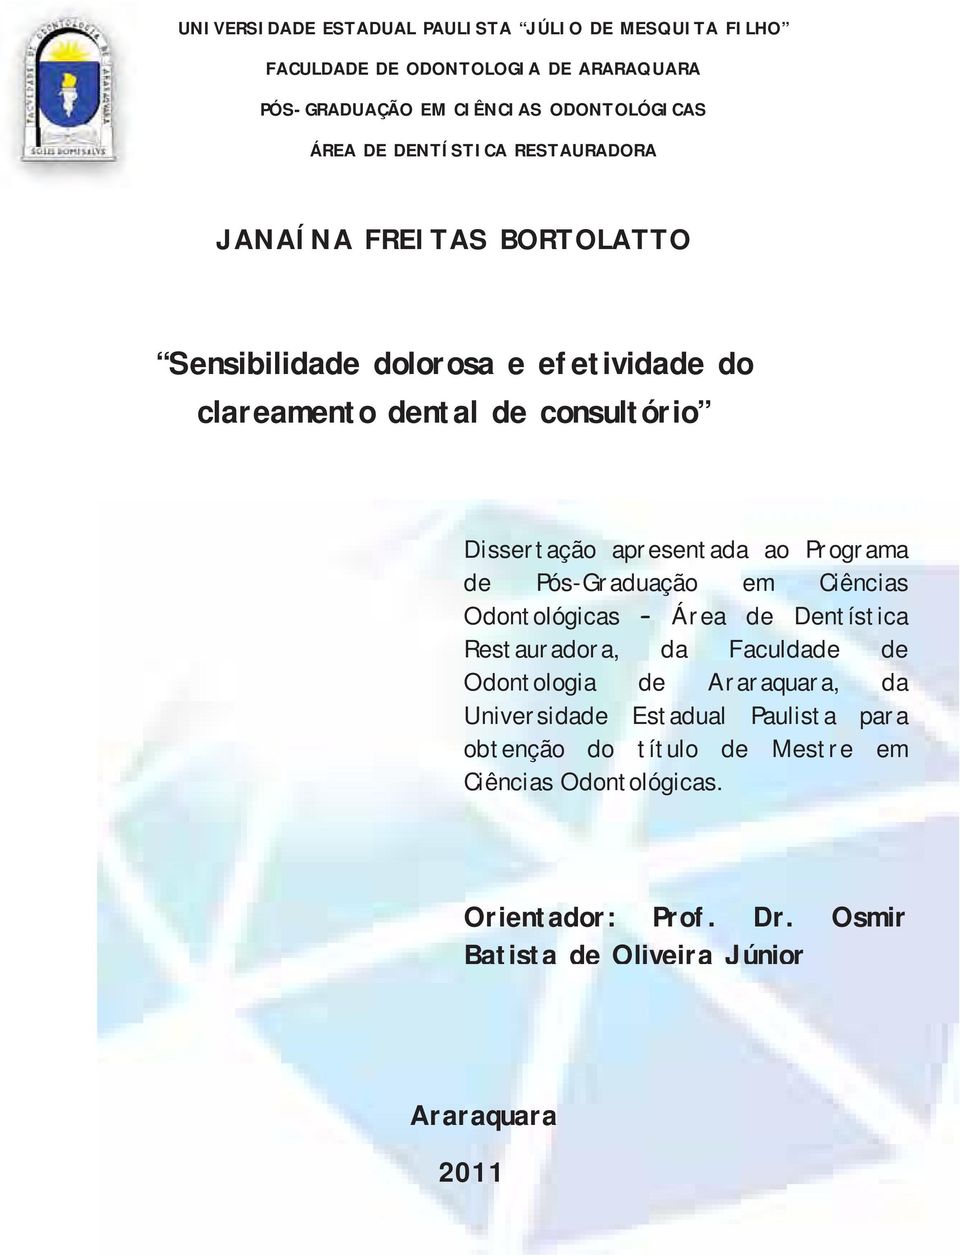 apresentada ao Programa de Pós-Graduação em Ciências Odontológicas Área de Dentística Restauradora, da Faculdade de Odontologia de Araraquara, da